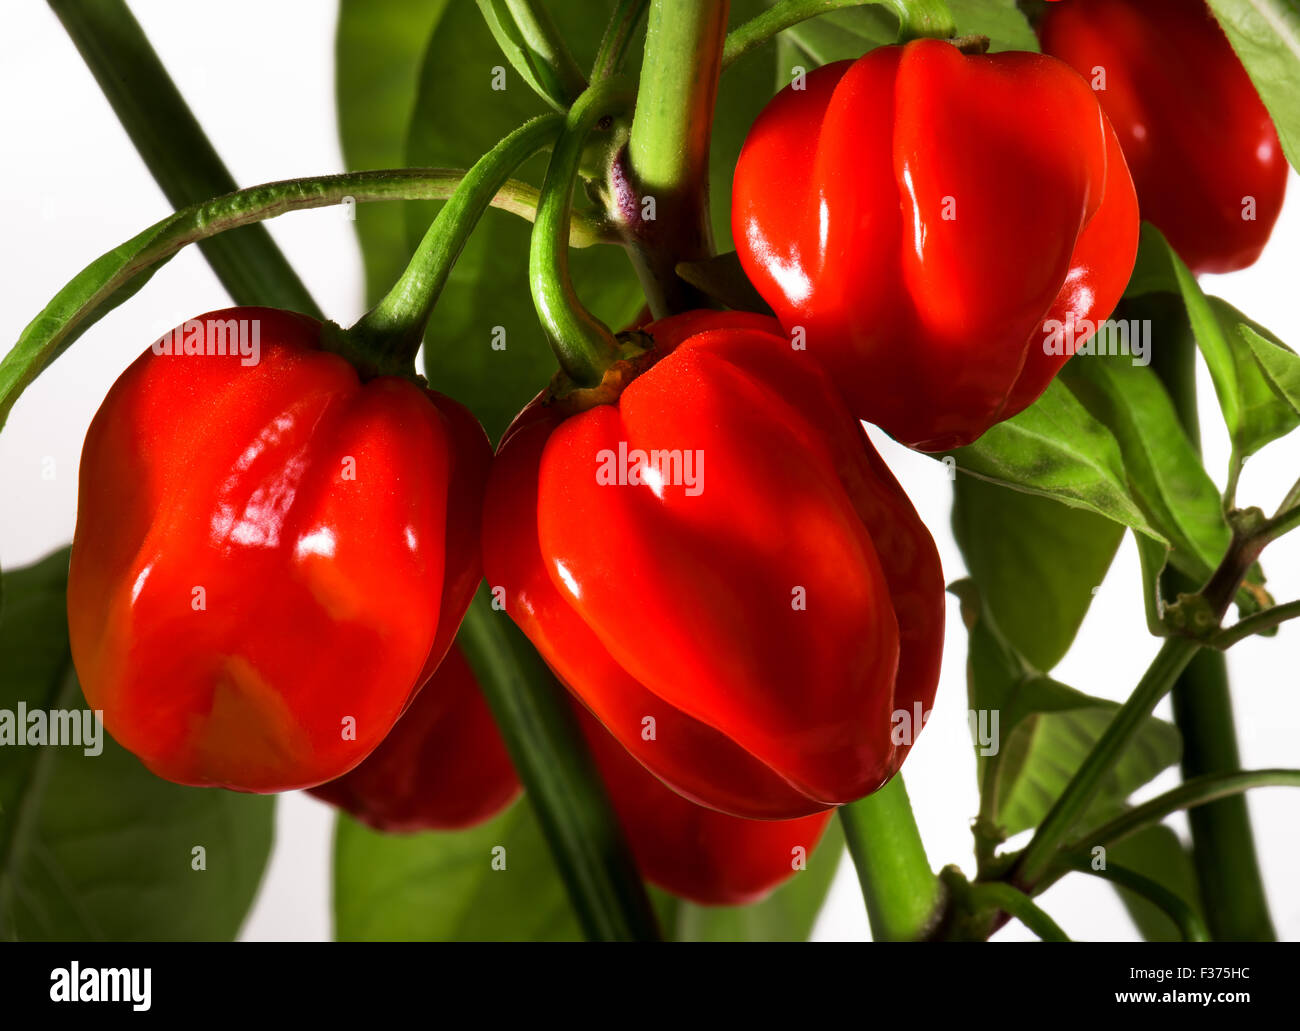 Molto rosso peperoncino habanero hot chili pepper sulla bussola verde rosso raccolto fresco autunno brillantezza alimentare cuoco spezie bianco piccante Foto Stock